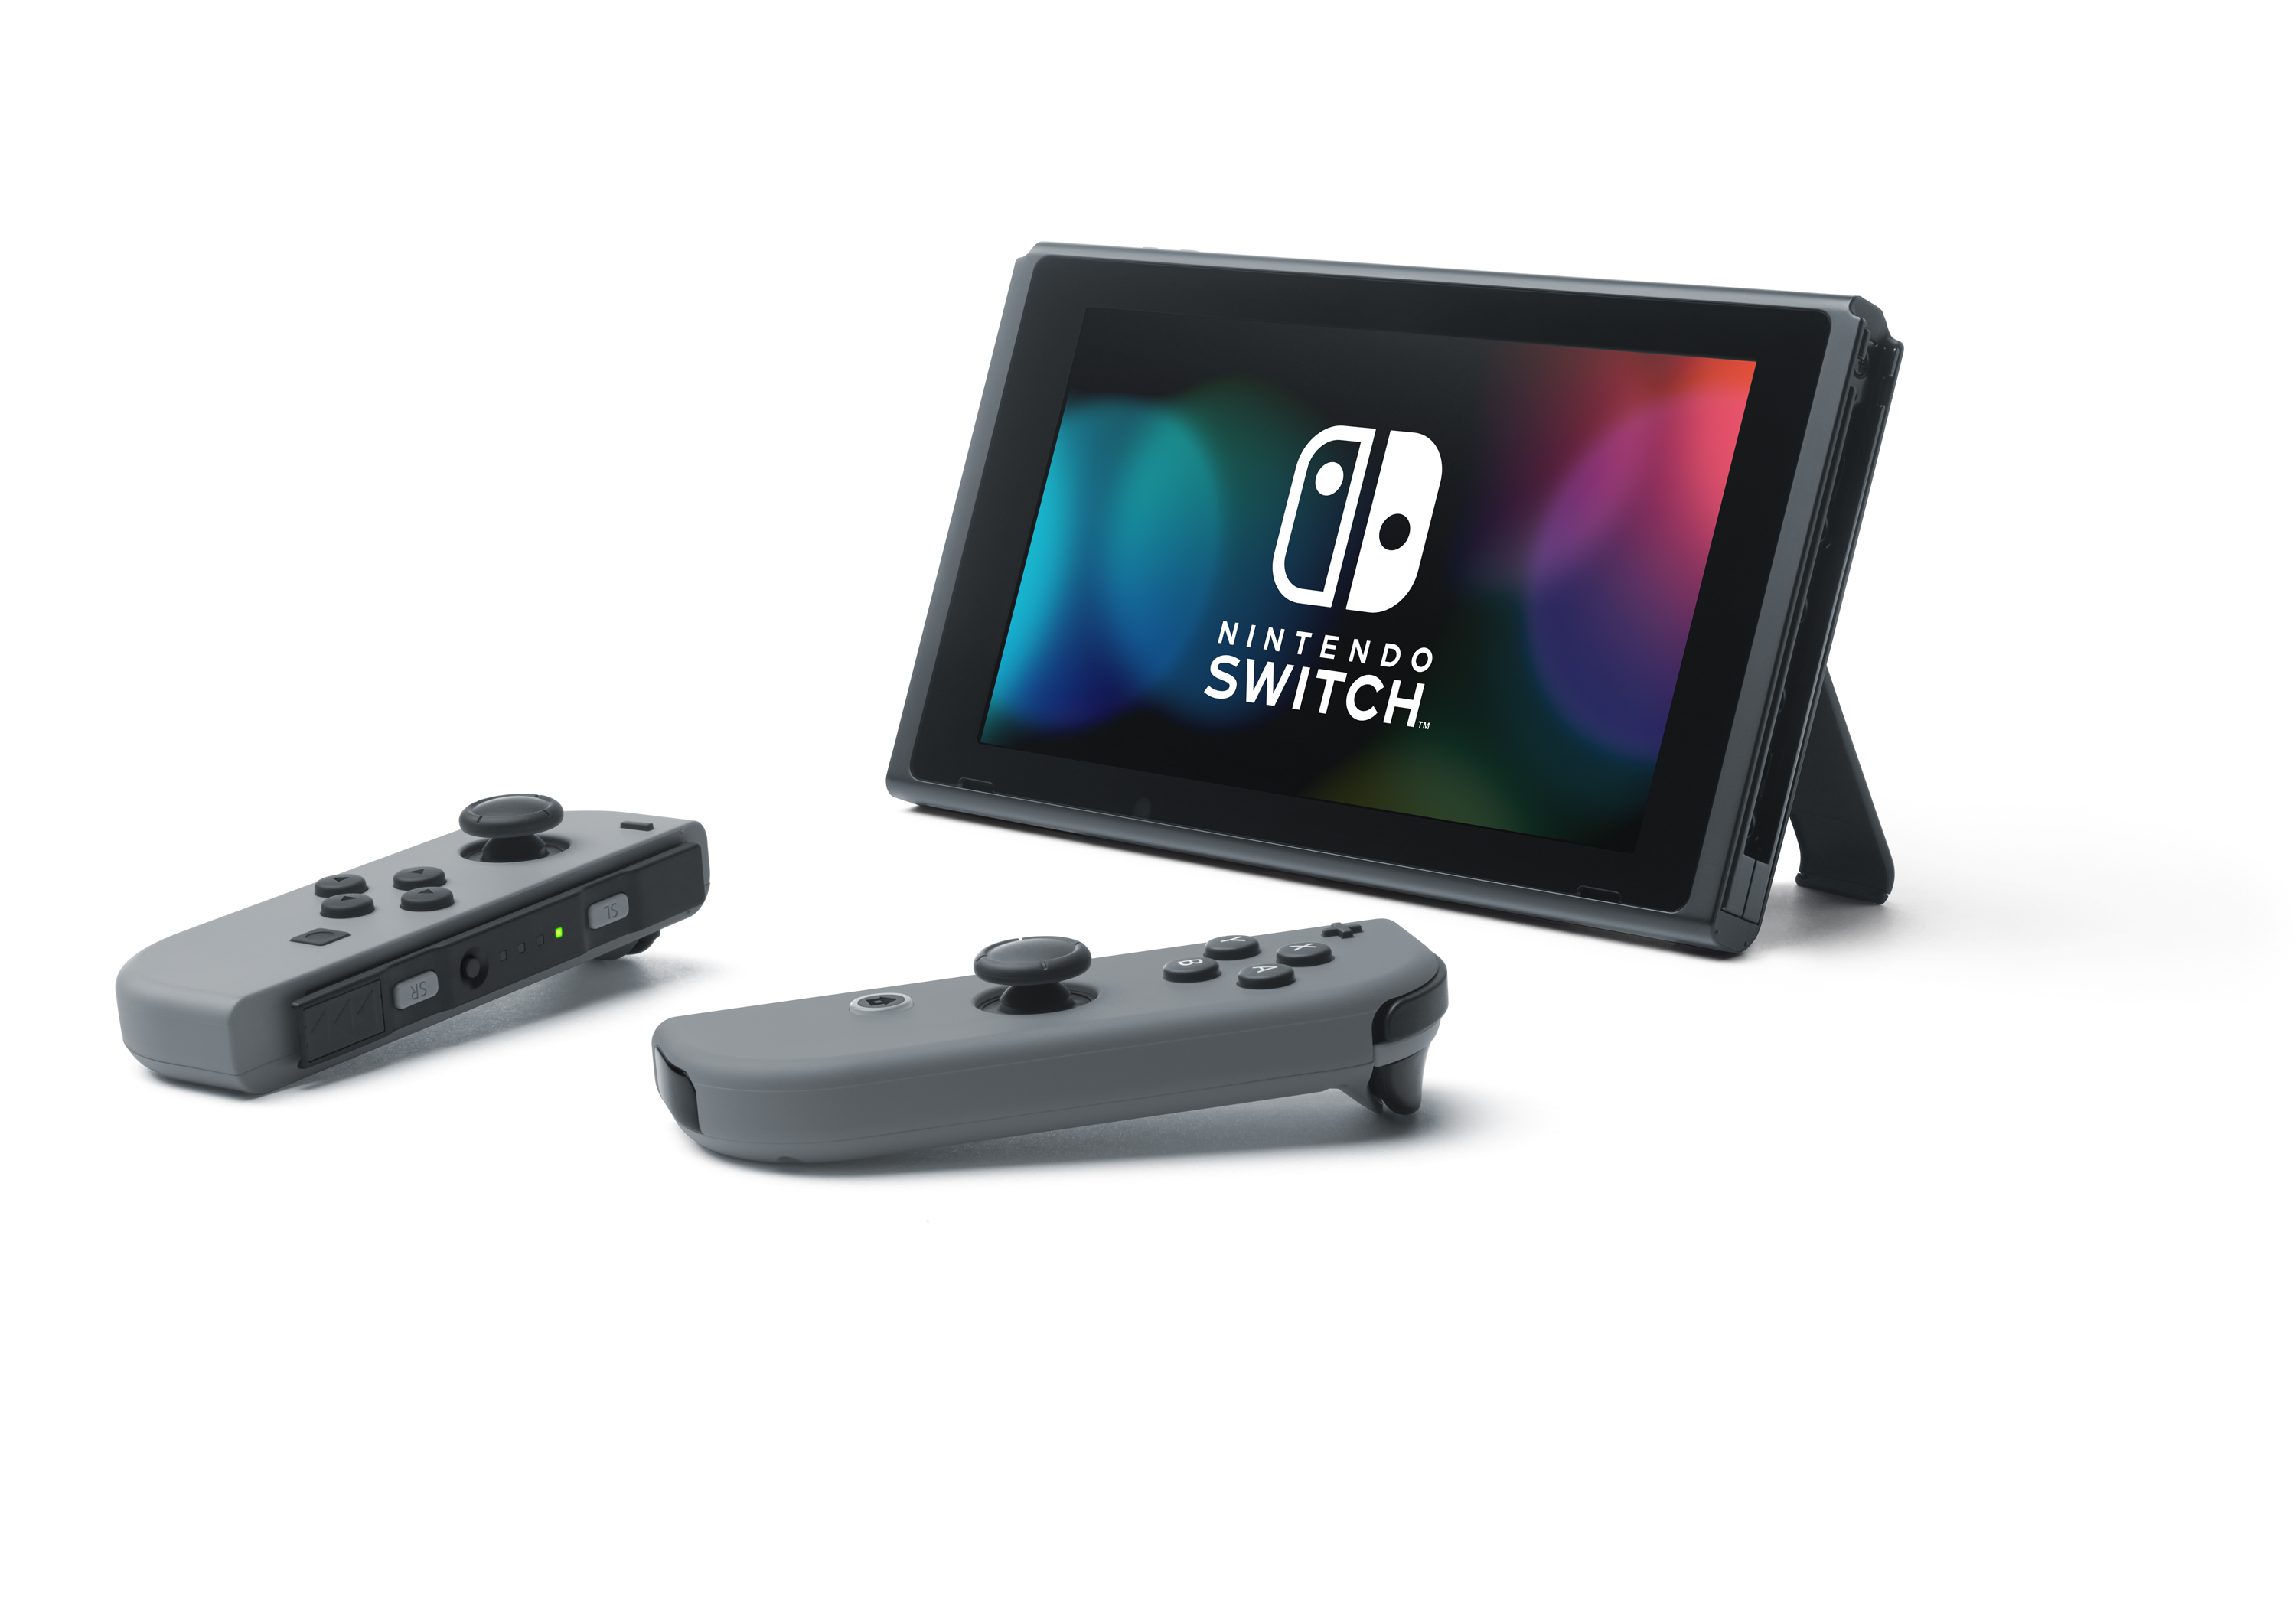 Taglio di prezzo per Nintendo Switch in Francia